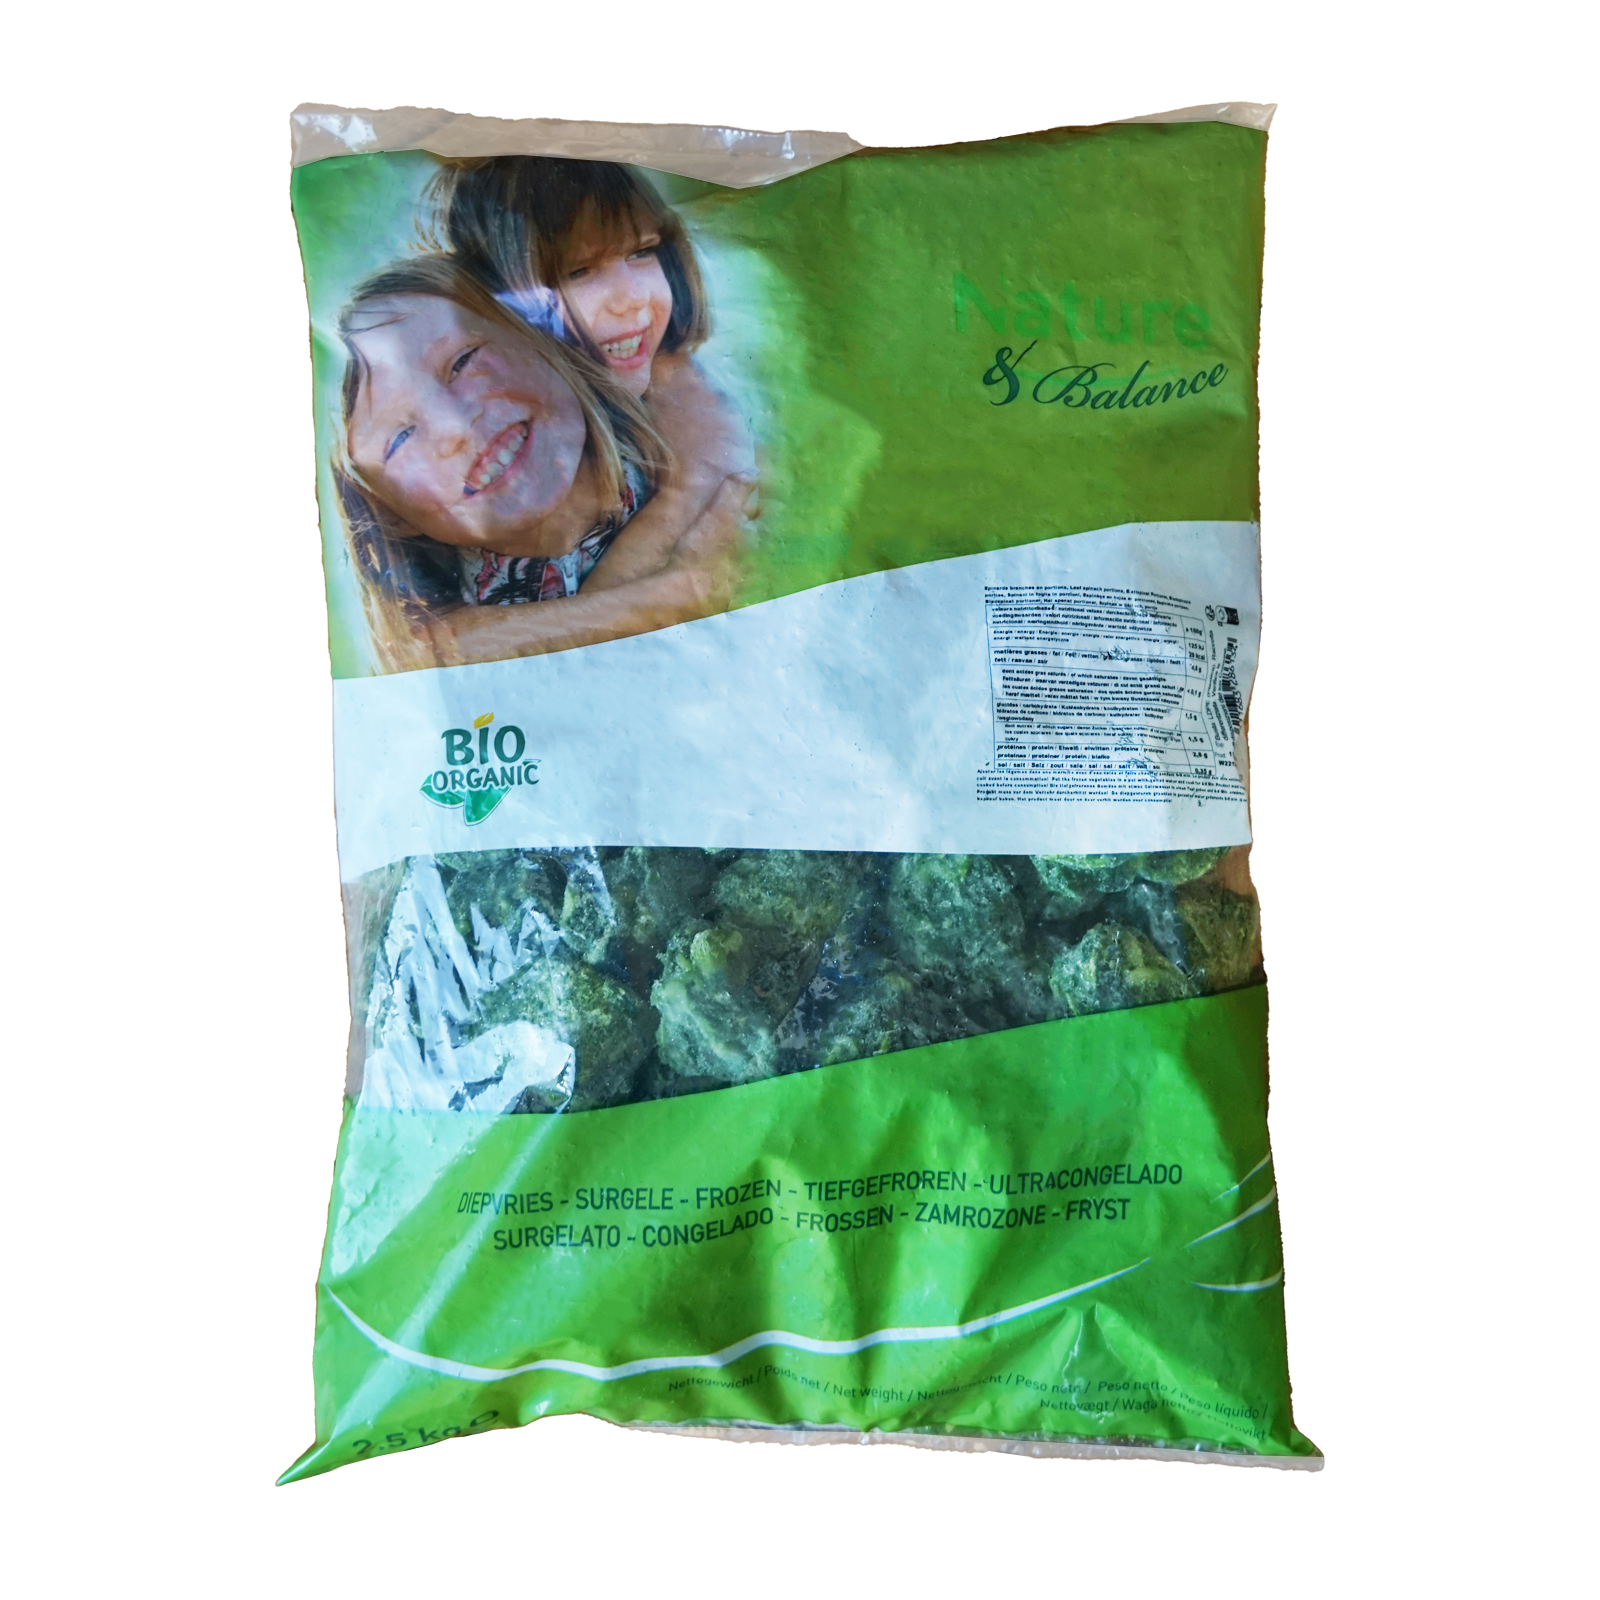 有機 JAS オーガニック 冷凍 ほうれん草 キューブ ベルギー産 化学物質不使用 (1kg-2.5kg) ホライズンファームズ